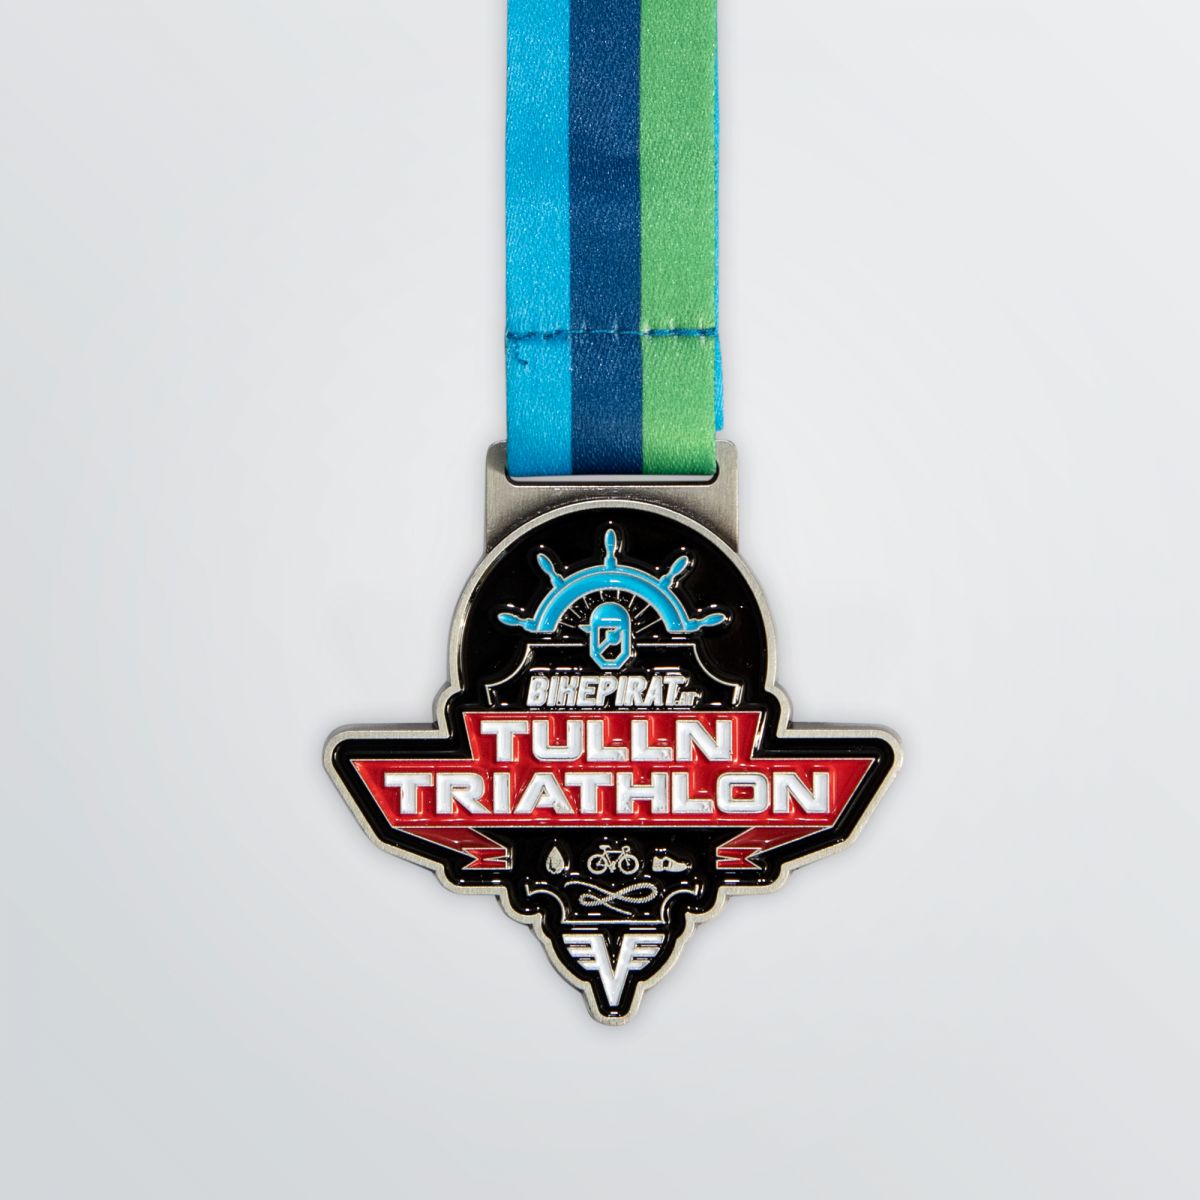 Sonderform-Medaille nach Kundenwunsch hier als Produktbeispiel mit Triathlon-Symbolen abgebildet